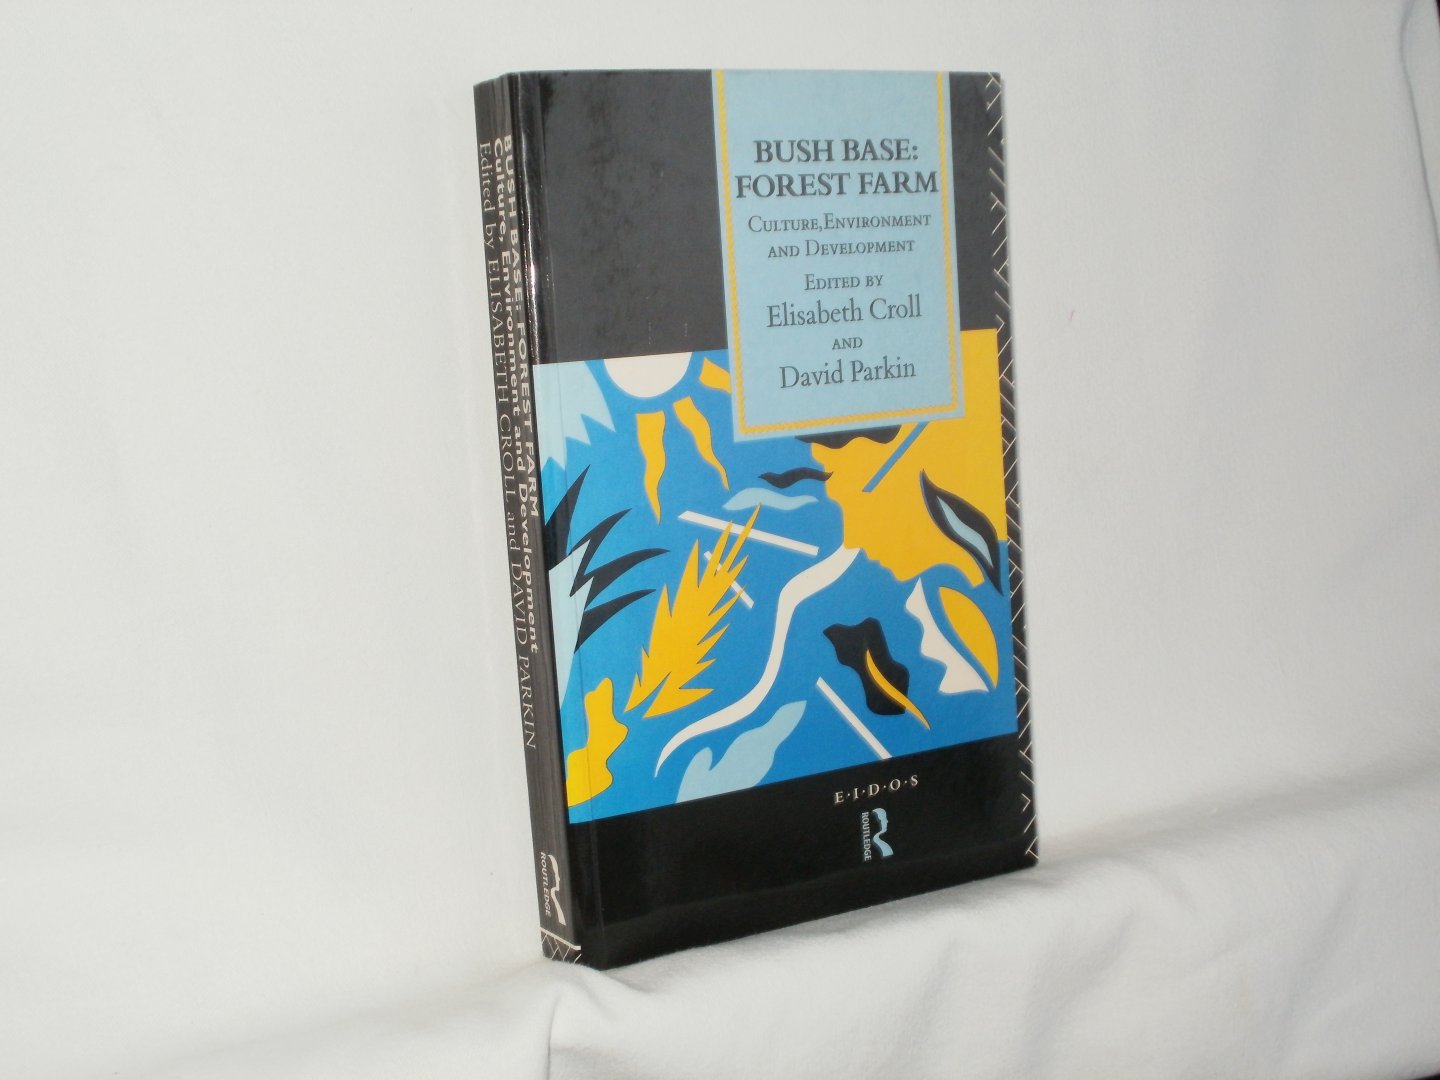 Croll, Elisabethe; Parkin, David (eds.) - Bush Base, Forest Farm: Culture, Environment, and Development